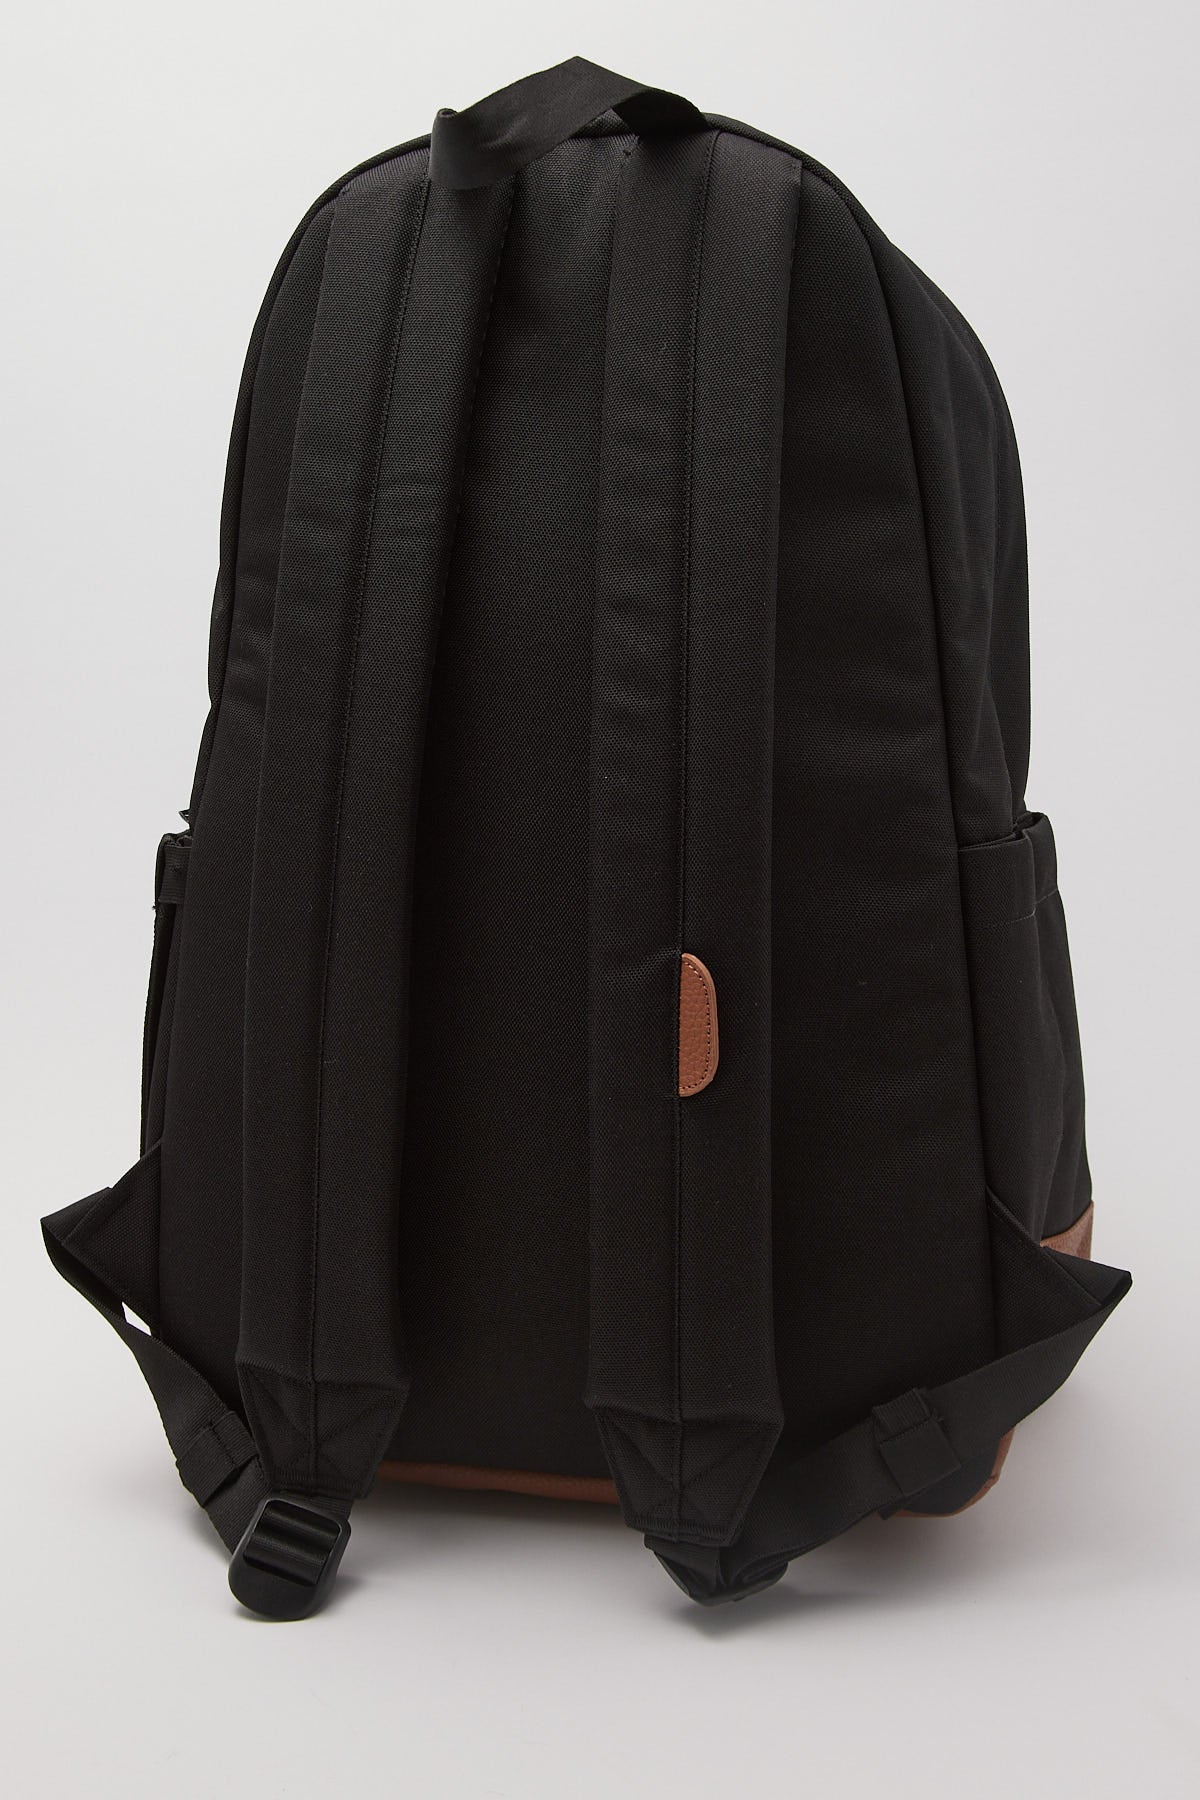 Herschel Supply Co. Heritage Backpack Black